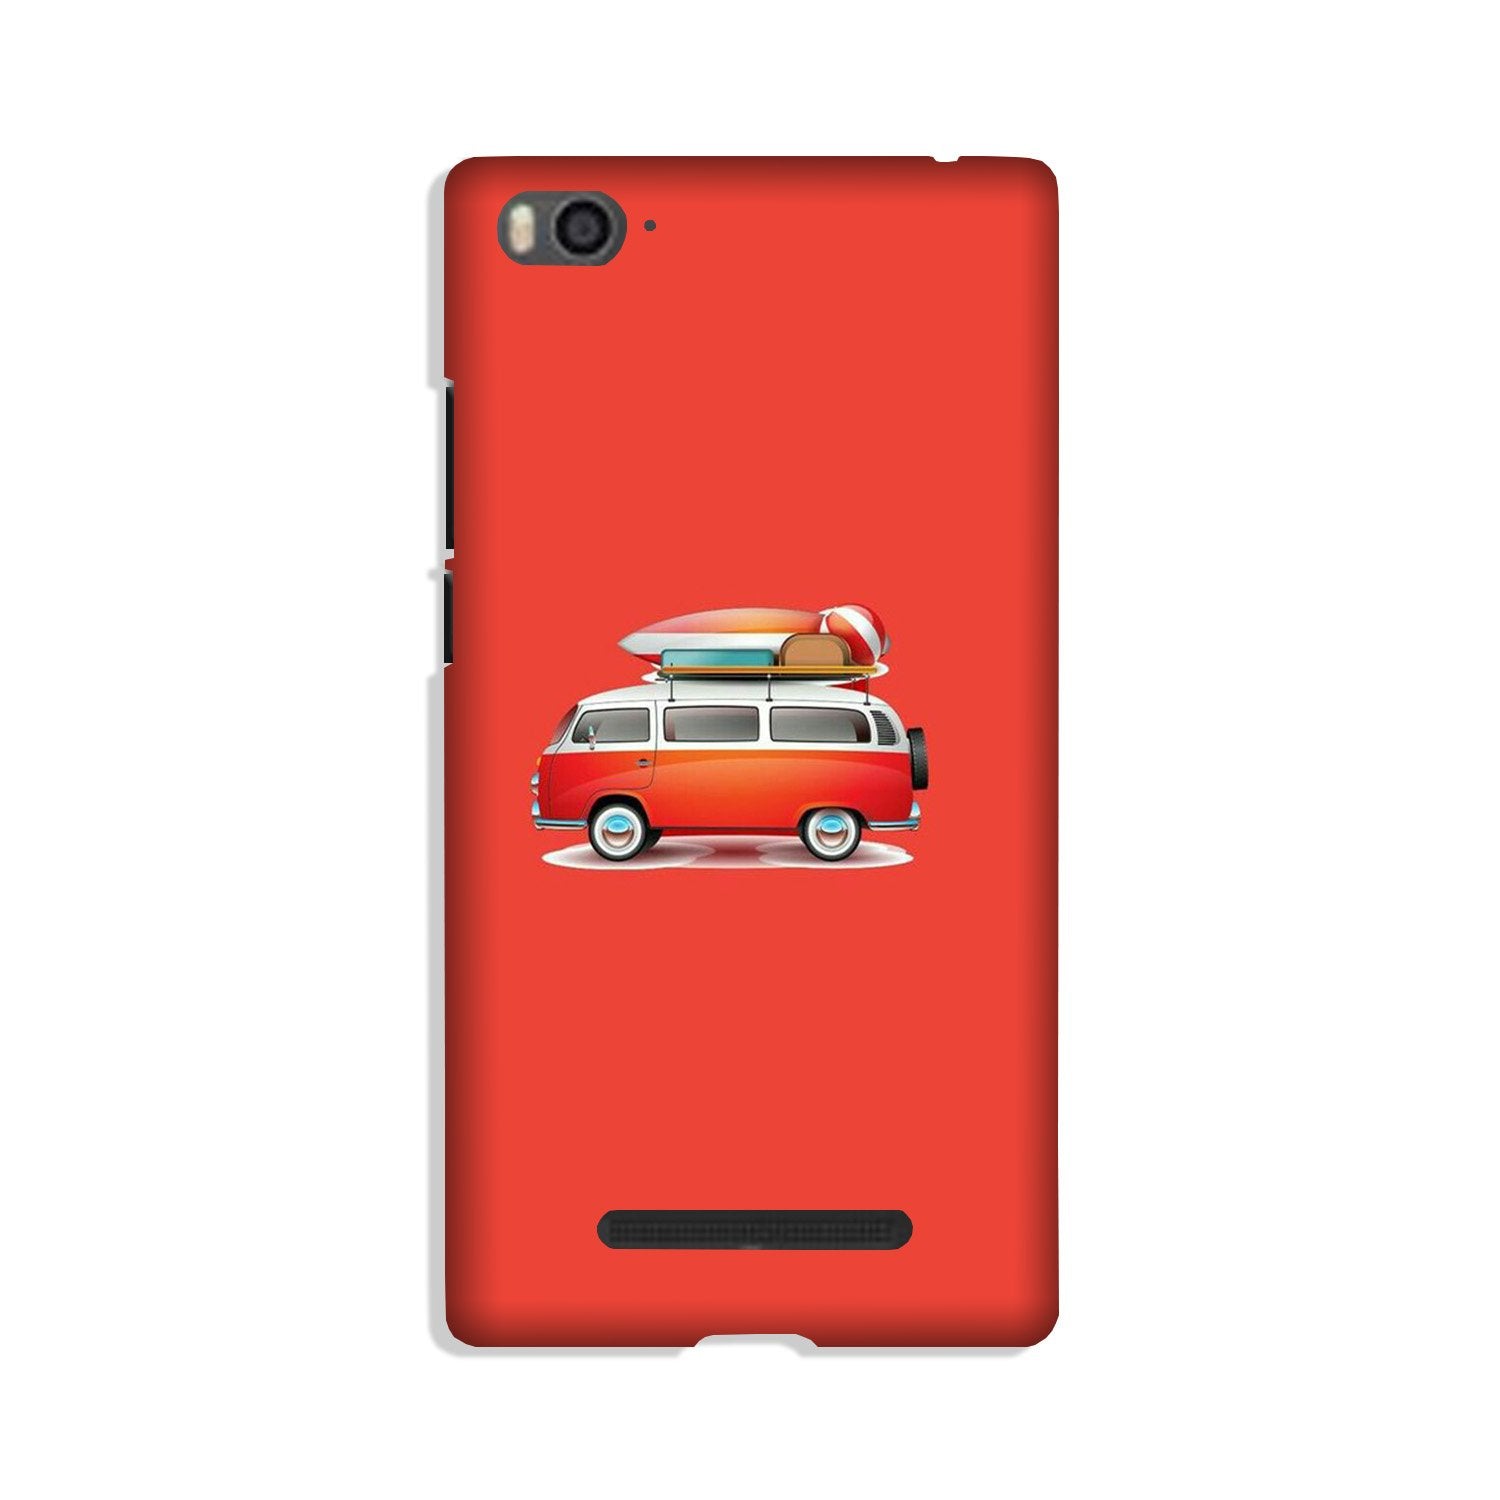 Travel Bus Case for Xiaomi Mi 4i (Design No. 258)